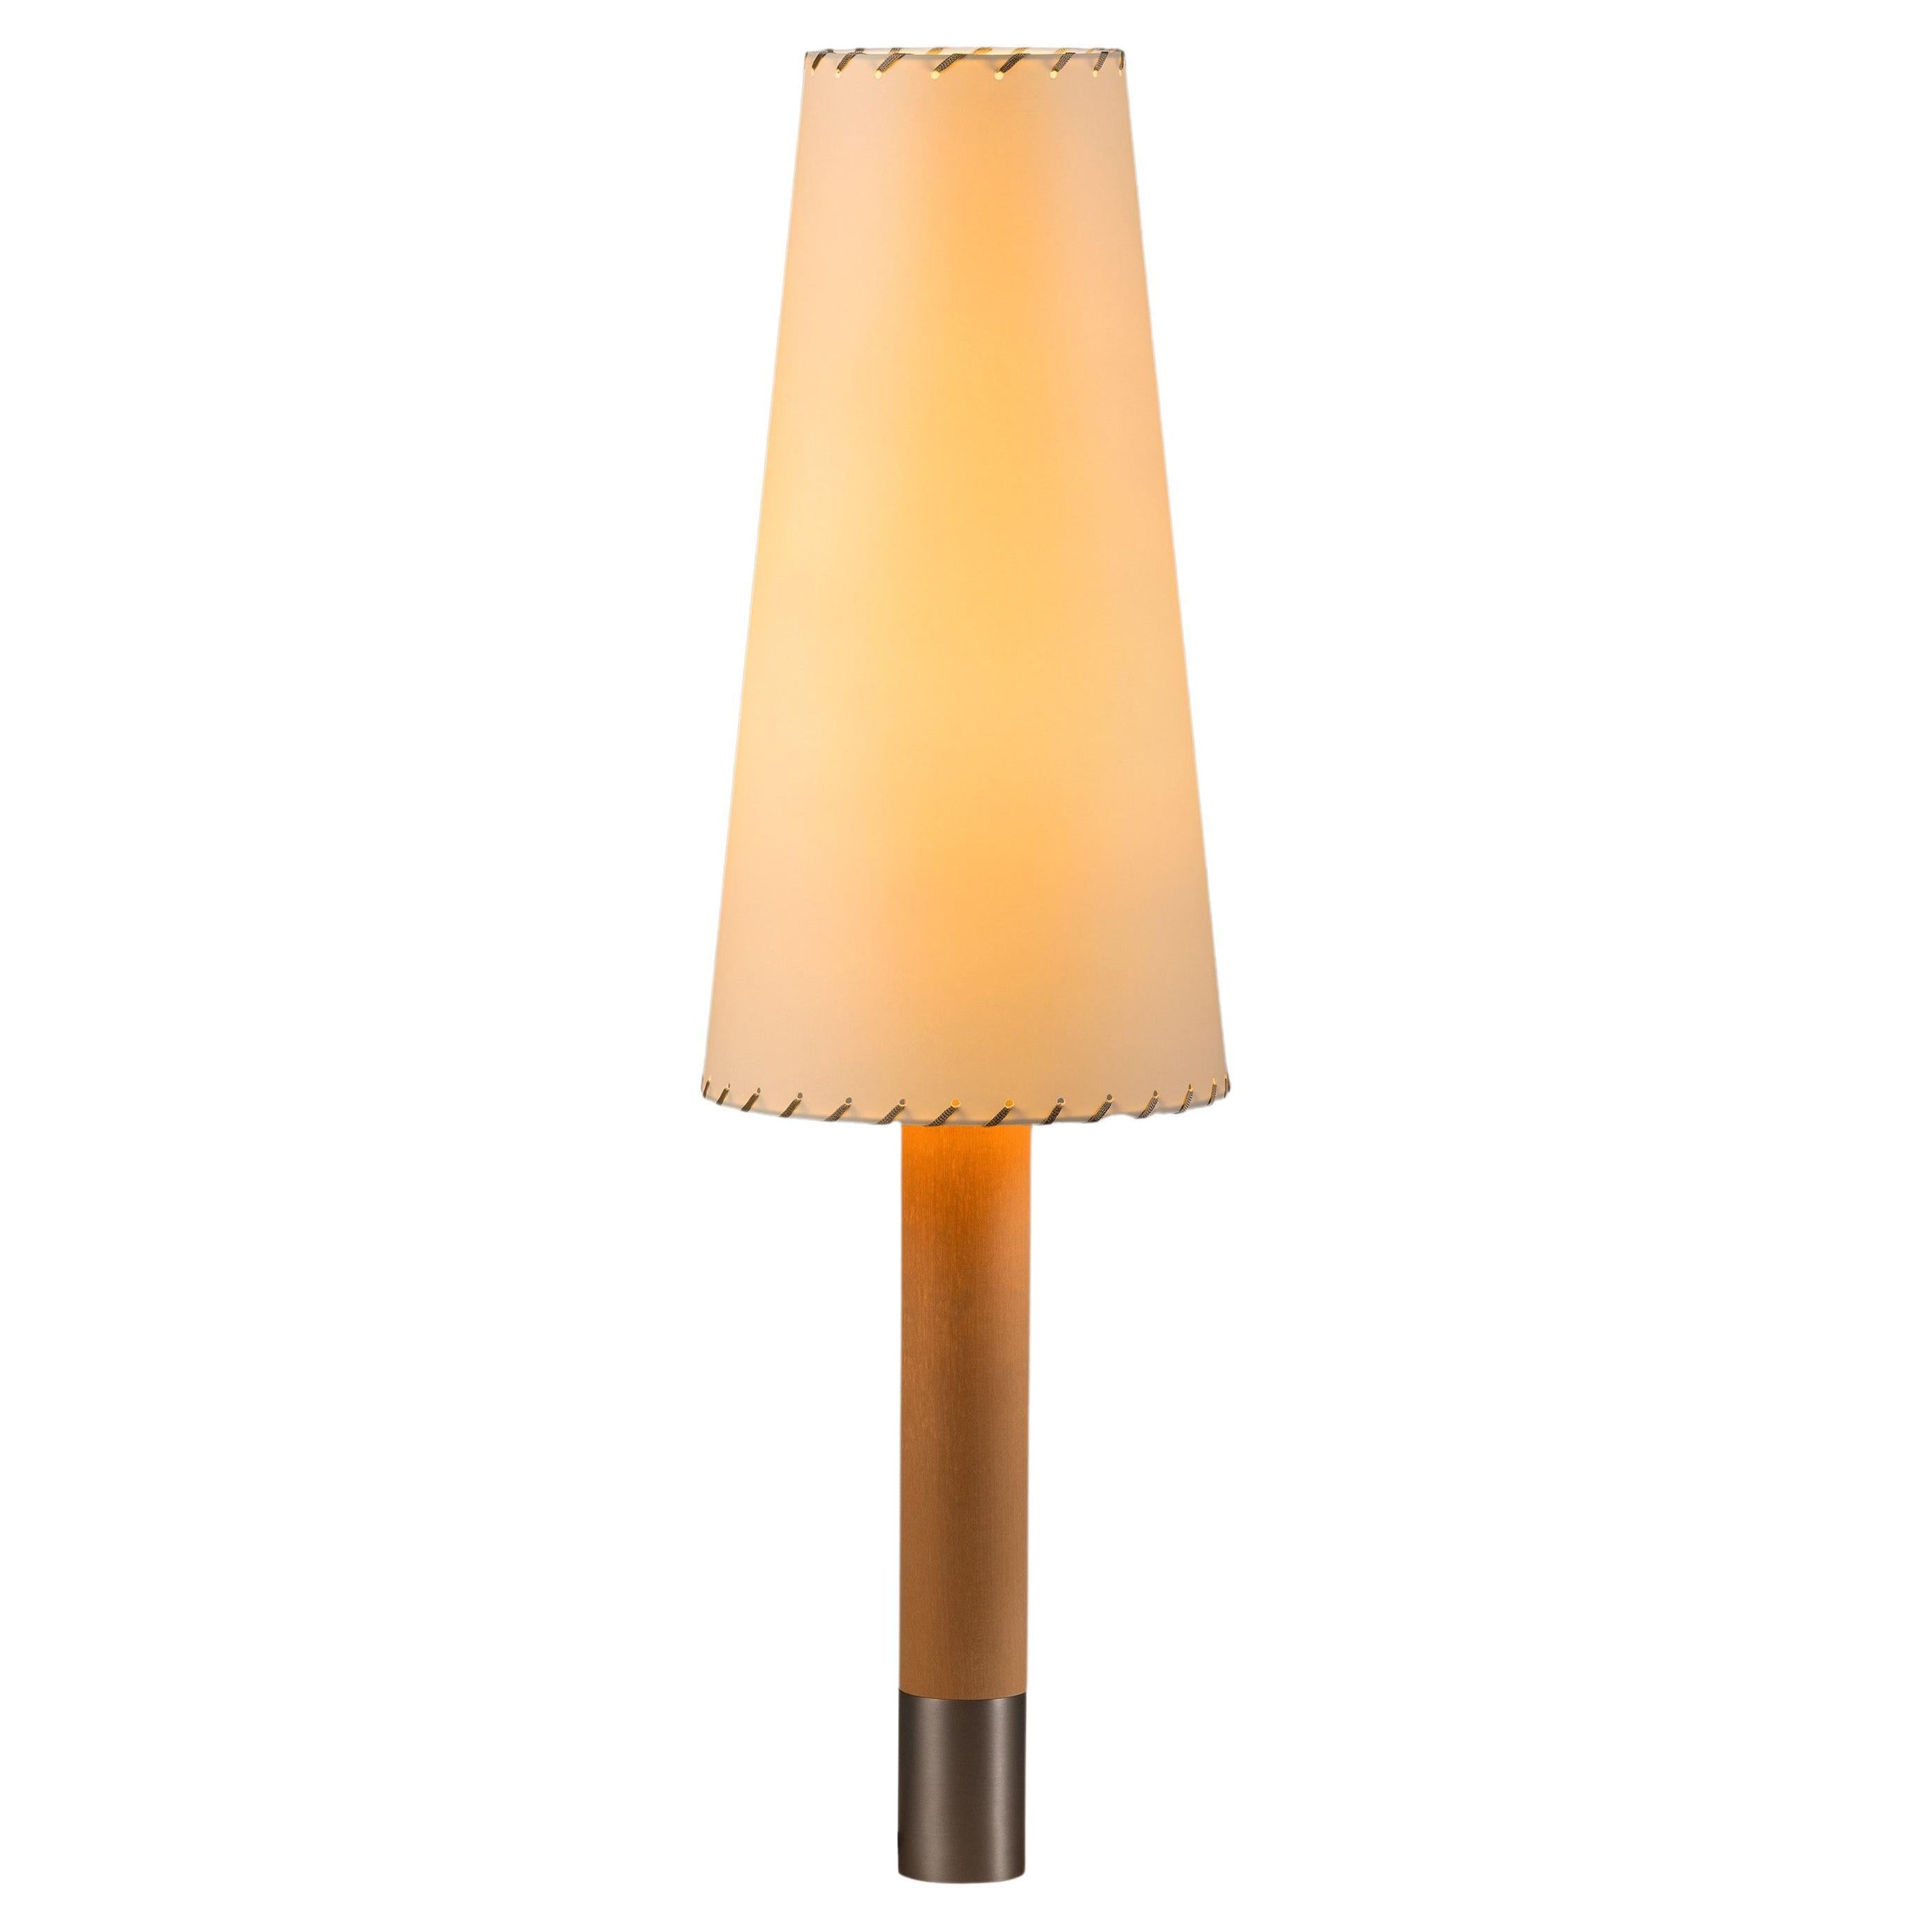 Nickel Básica M2 Table Lamp by Santiago Roqueta, Santa & Cole For Sale